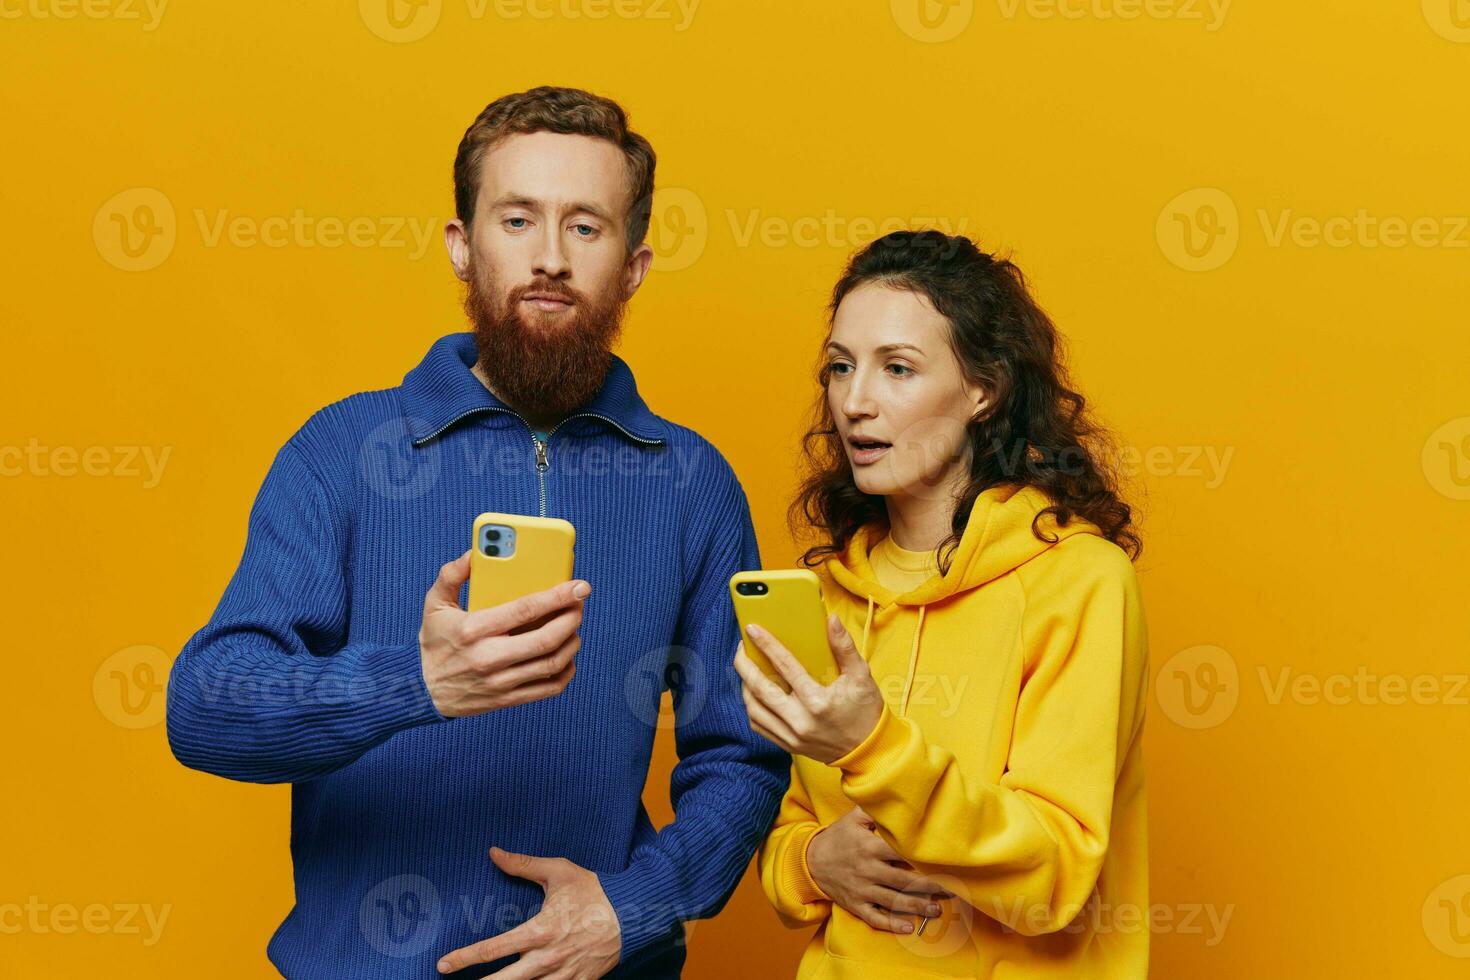 Mann und Frau Paar lächelnd fröhlich mit Telefon im Hand Sozial Medien Anzeigen Fotos und Videos, auf Gelb Hintergrund, Symbole Zeichen und Hand Gesten, Familie Freiberufler.